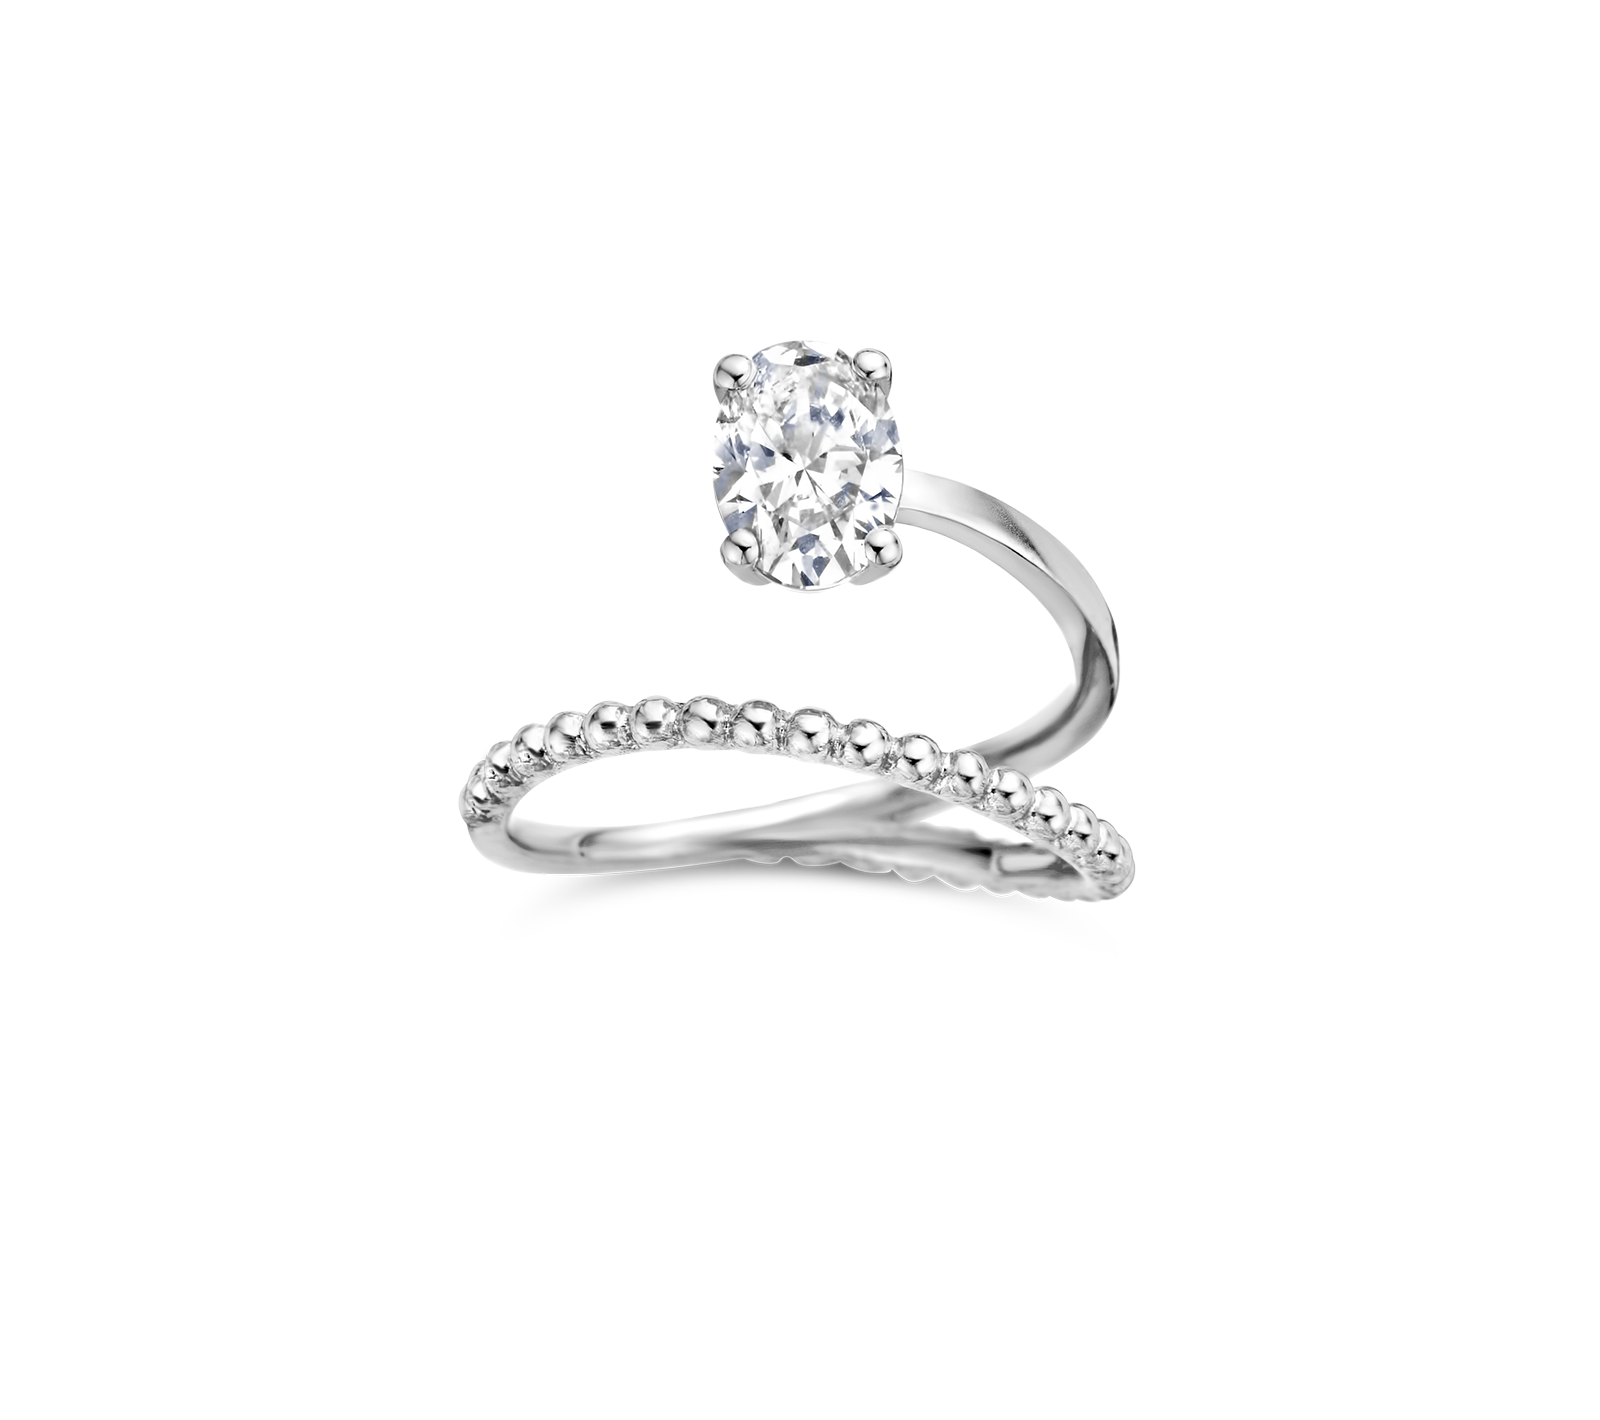 Bille engagement ring packshot - white gold